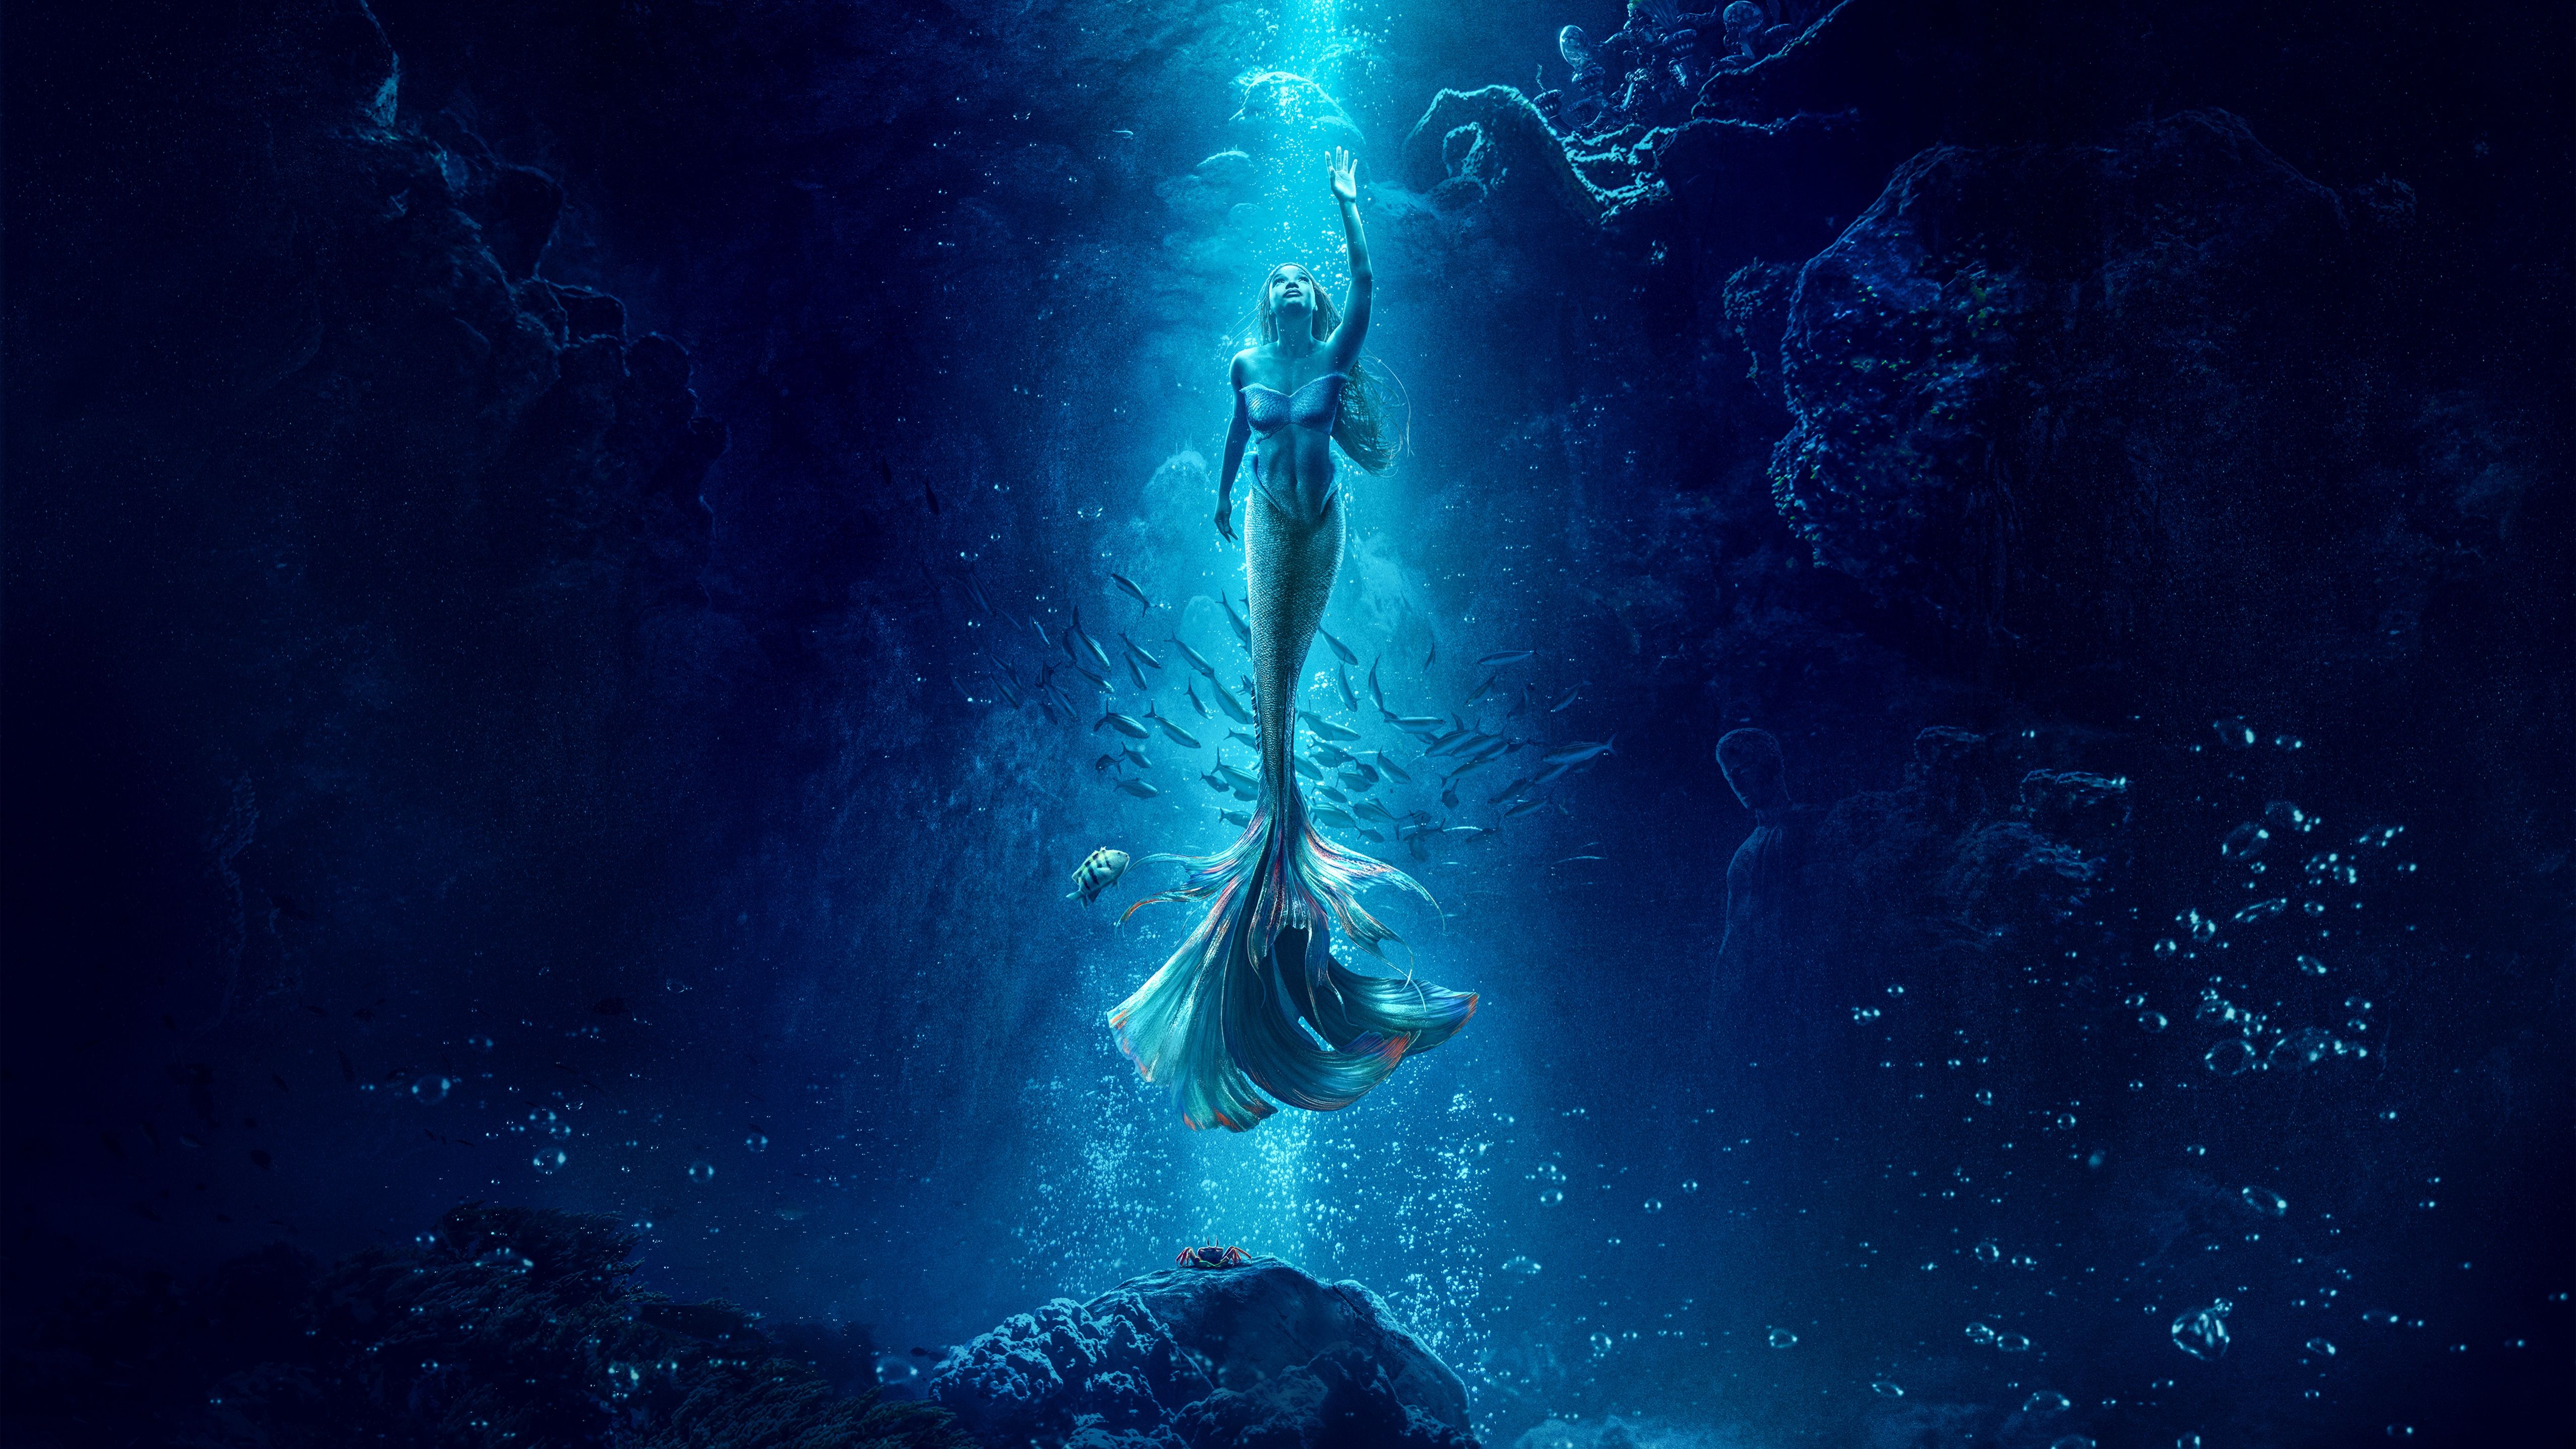 The Little Mermaid Wallpaper 4K, 8K, Halle Bailey as Ariel